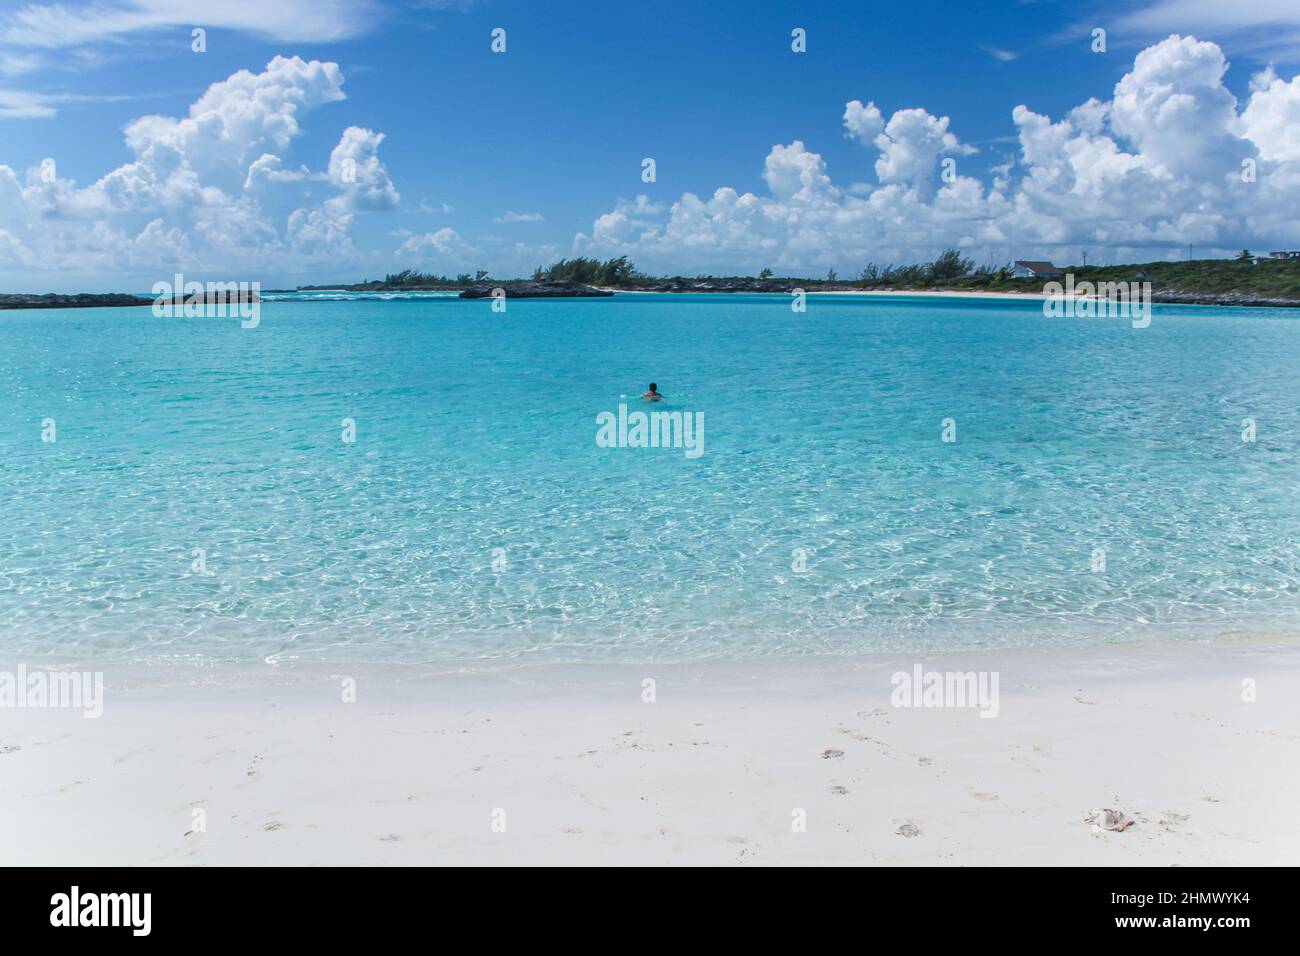 Hermosa vista del hombre flotando en la playa en el océano Atlántico con arena blanca en las islas Bahamas. Foto de stock